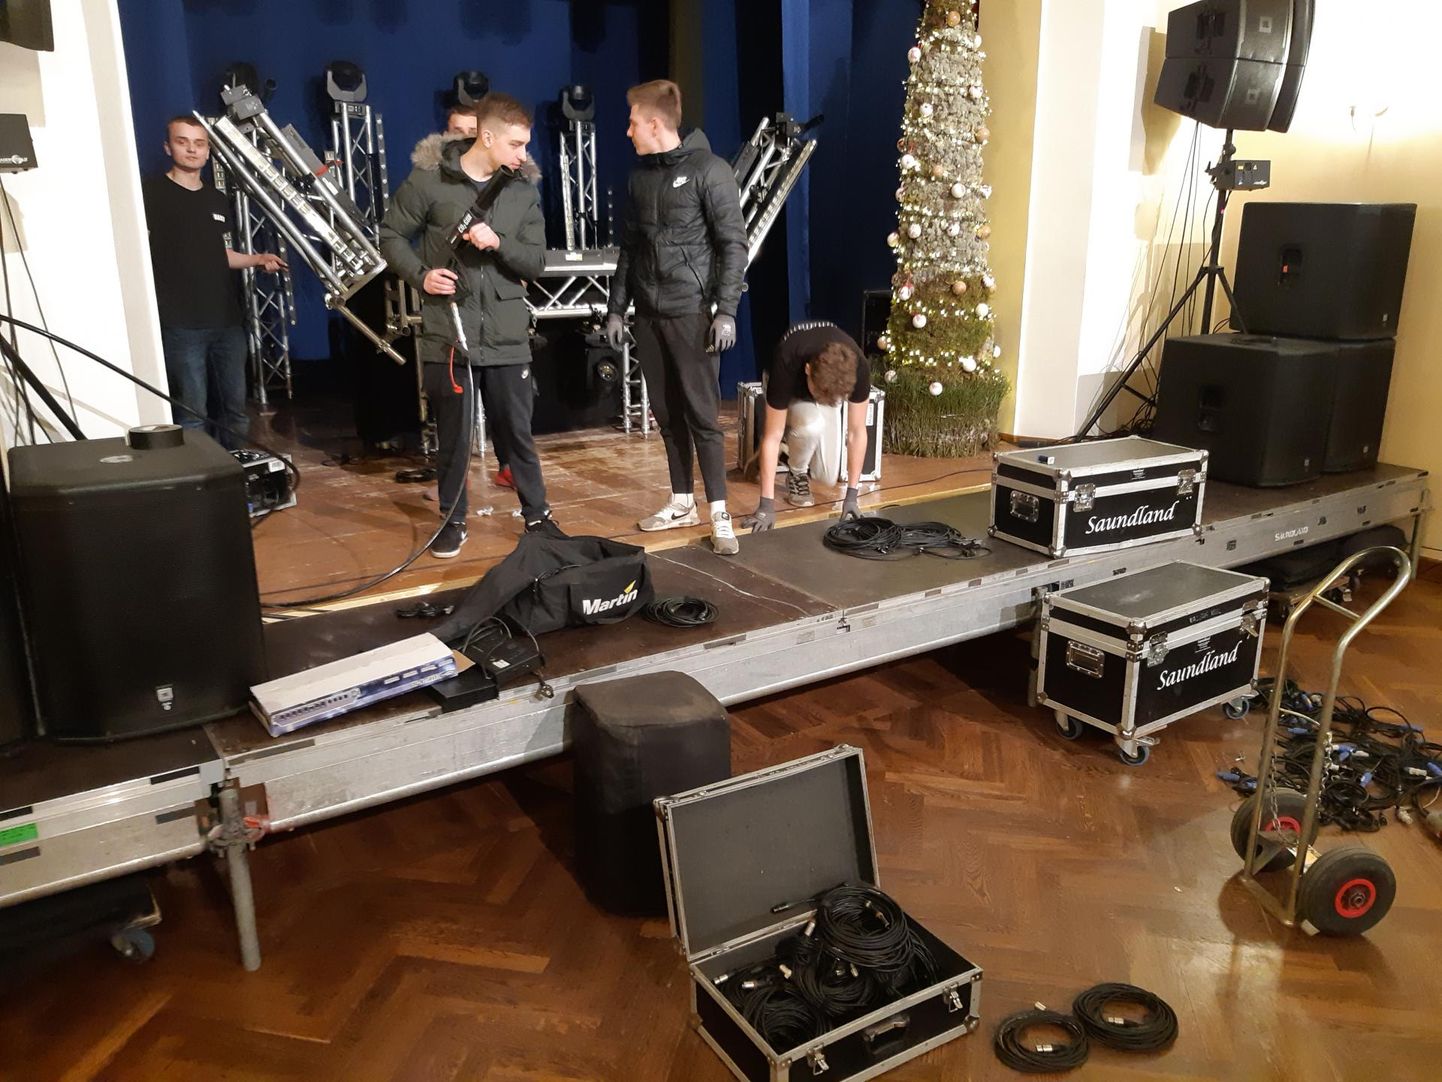 Noored tegid ürituse noortele: eile peeti Rakvere kultuurikeskuses jõulu-bash’i, teisisõnu koosolemist, kus ei tulnud puudust live-artistidest ega ka rohelist tuld näidanud noorsootöötajatest.